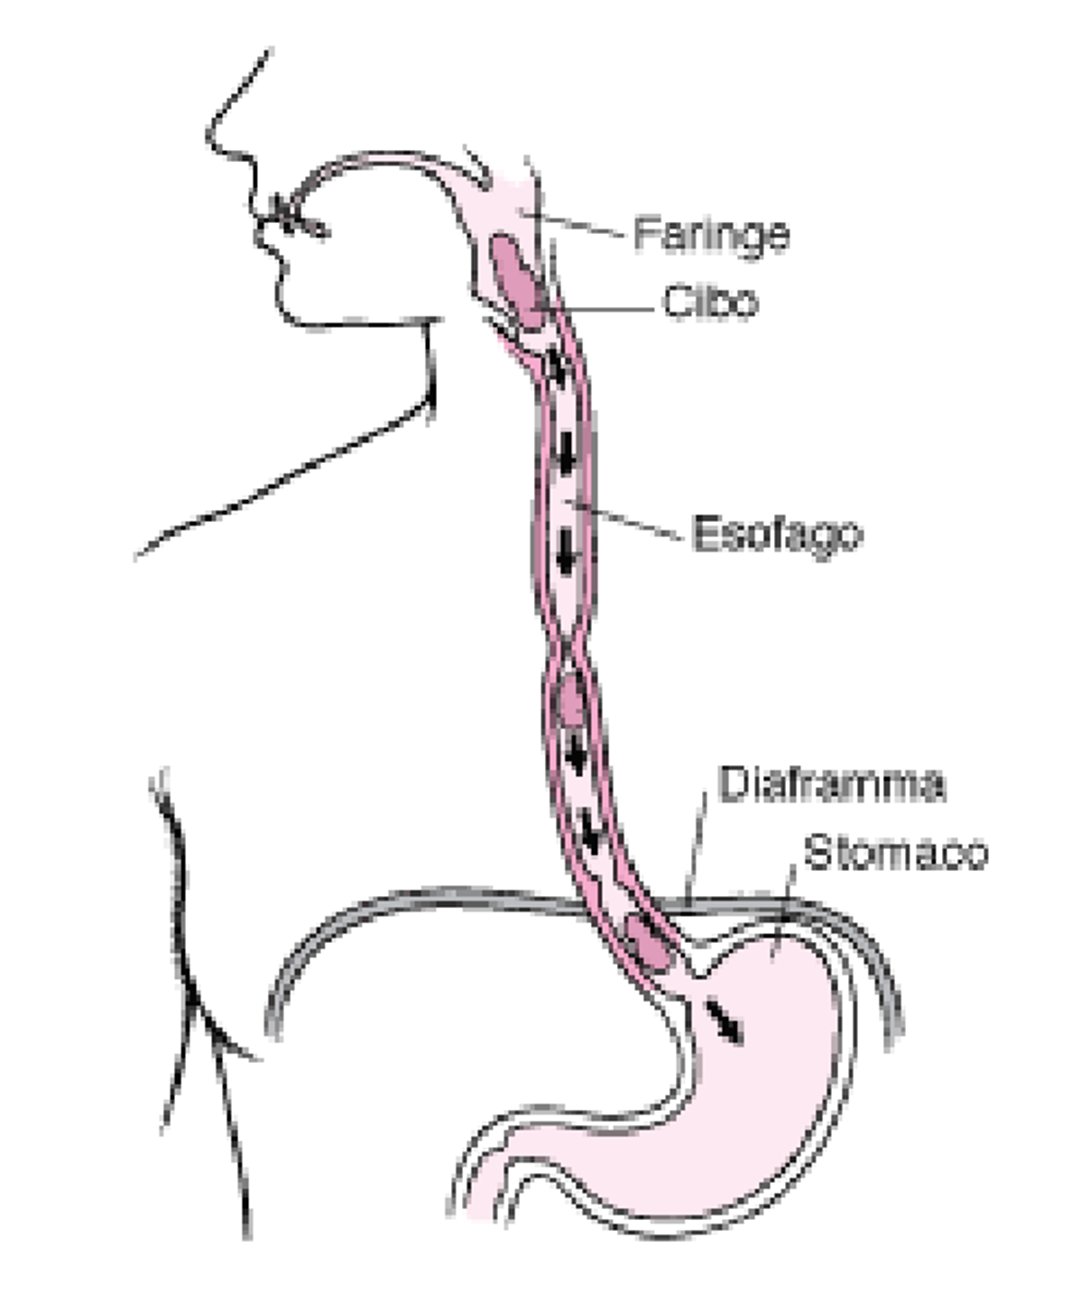 L’esofago